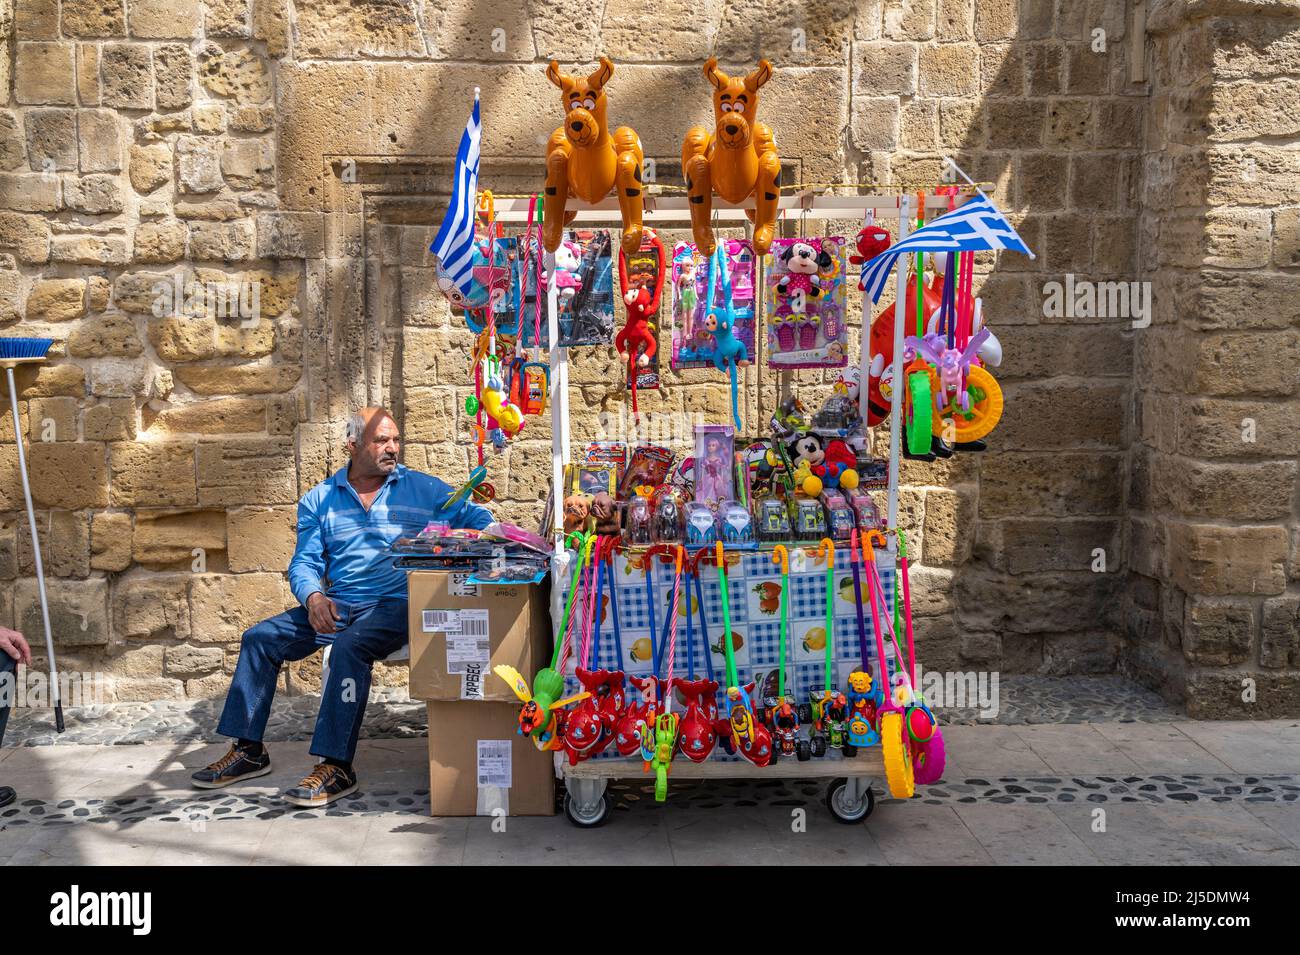 Mobiler Stand mit Spielzeug in Nikosia, Zypern, Europa  |  Mobile stall selling toys, Nicosia, Cyprus, Europe Stock Photo